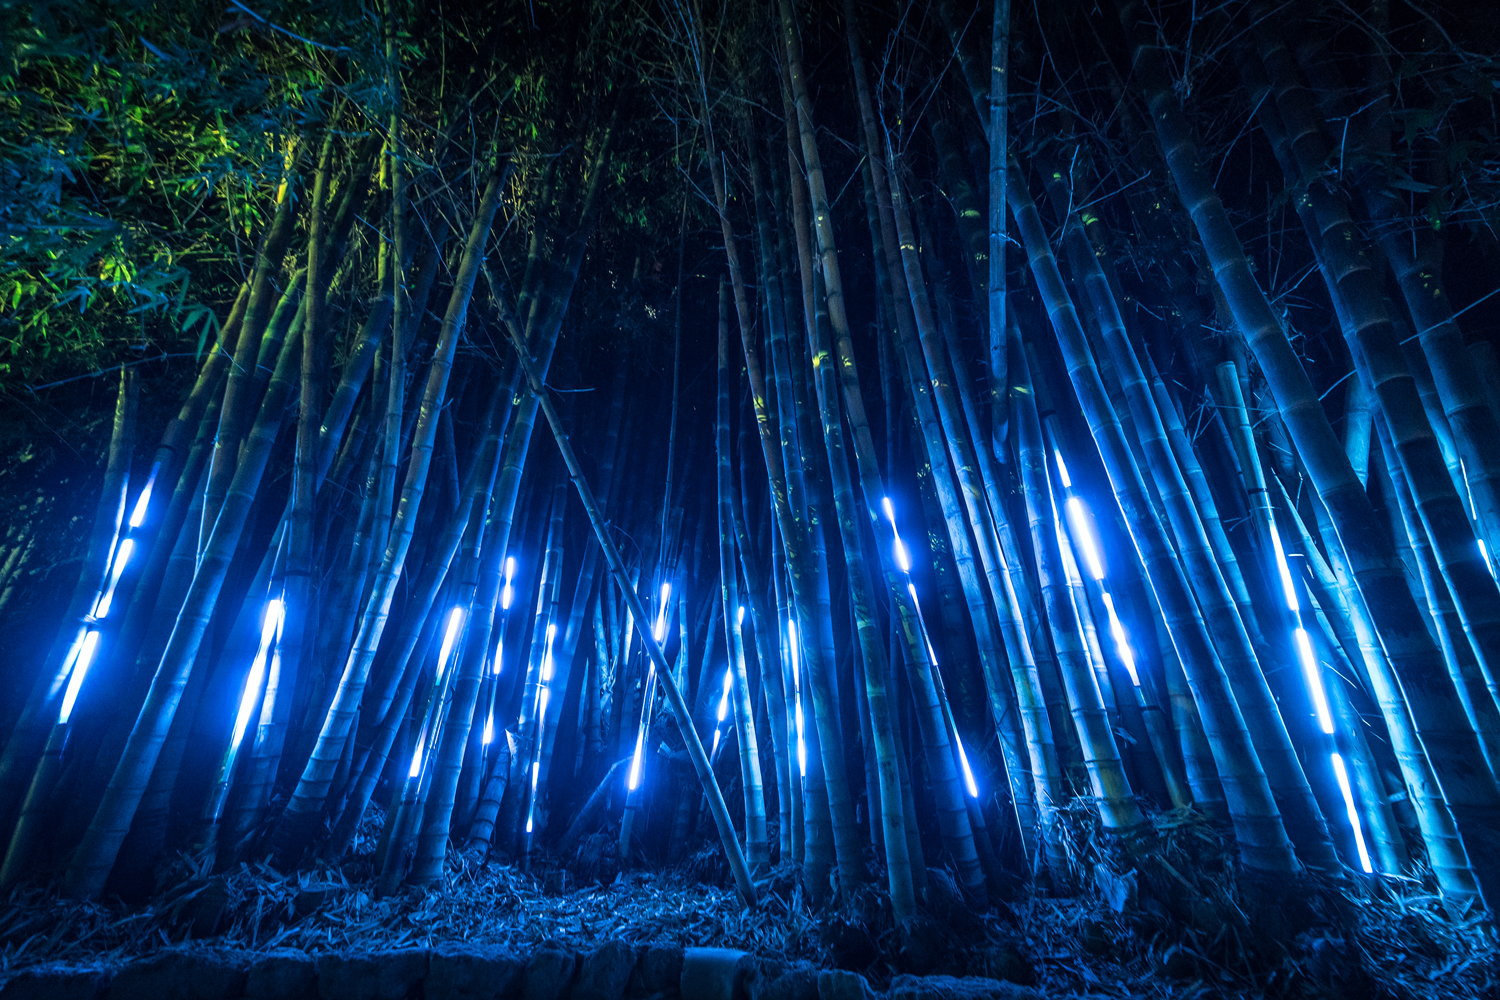 bambu led dell'orto botanico che illuminano di blu una tappa del percorso di anima mundi